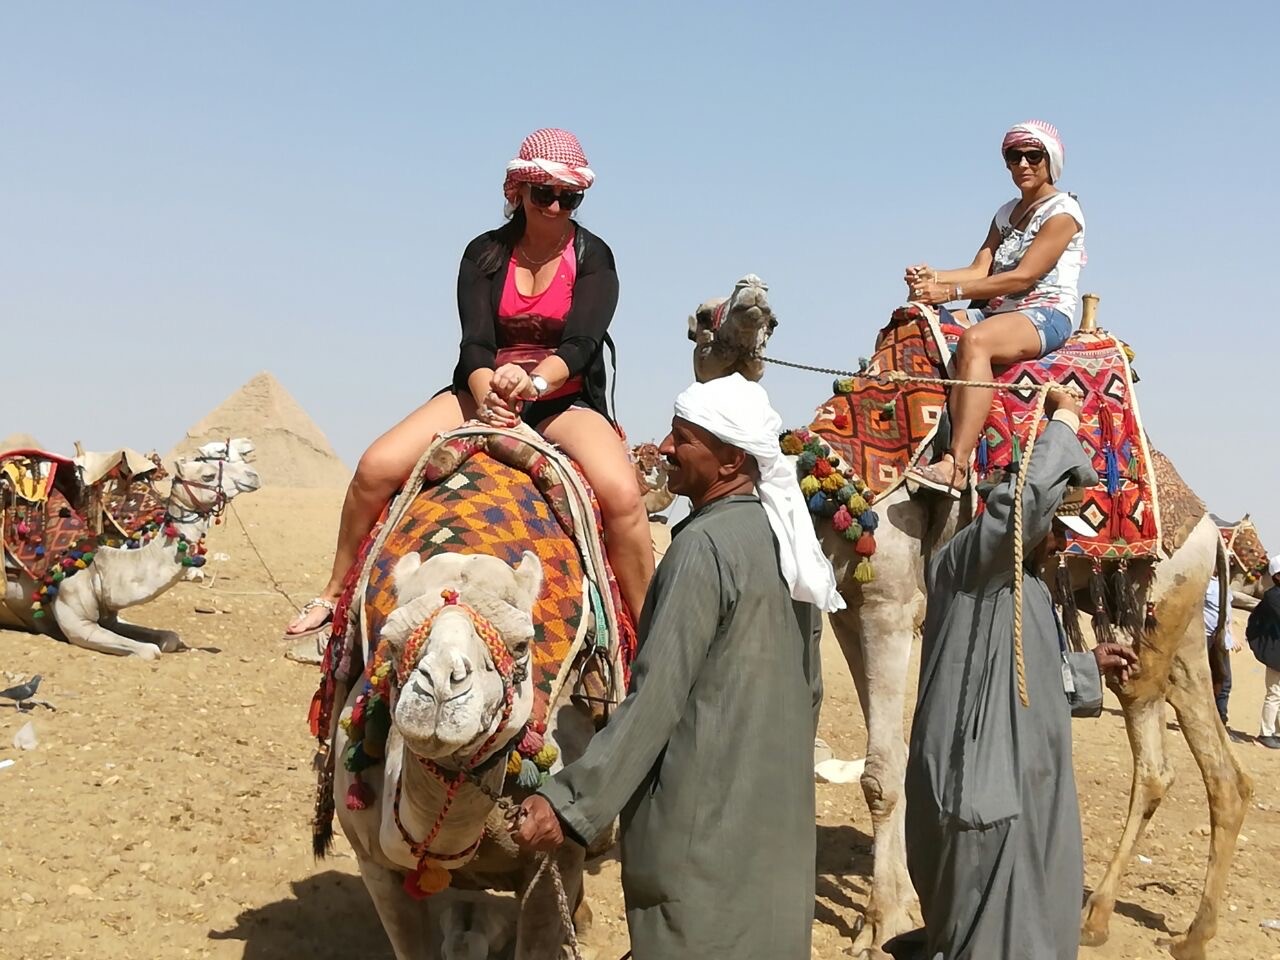 Los paseos en camello, un clásico imperdible en Egipto. Gladys (izquierda, de remera roja) es de Plottier. Su amiga Daniela (de remera blanca), de Buenos Aires.